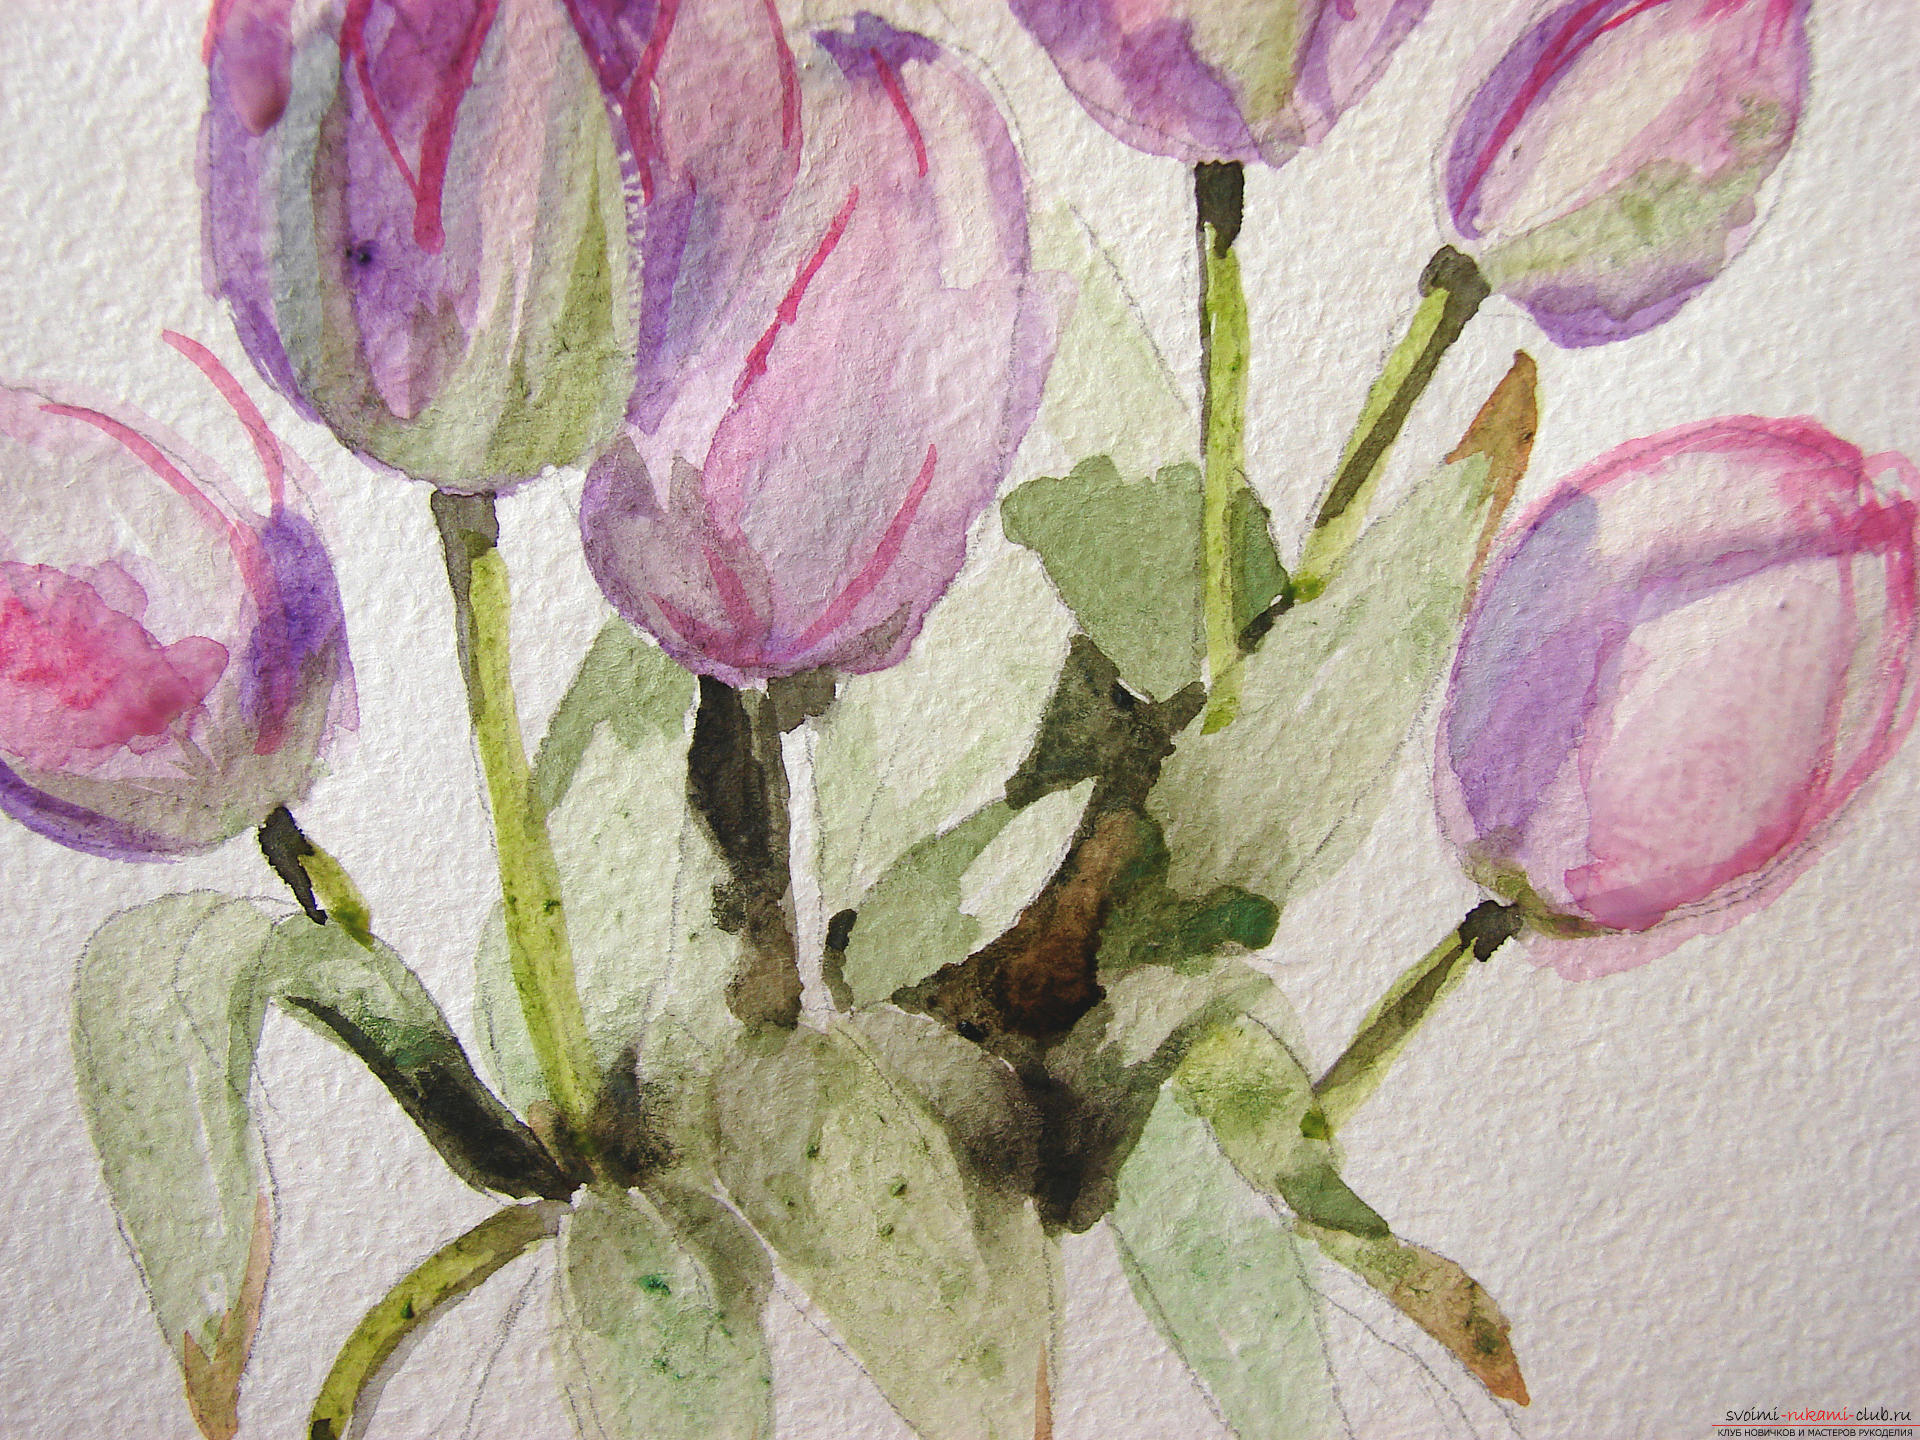 Мастер-класс по рисованию с фото научит как нарисовать цветы, подробно описав как рисуются тюльпаны поэтапно.. Фото №14